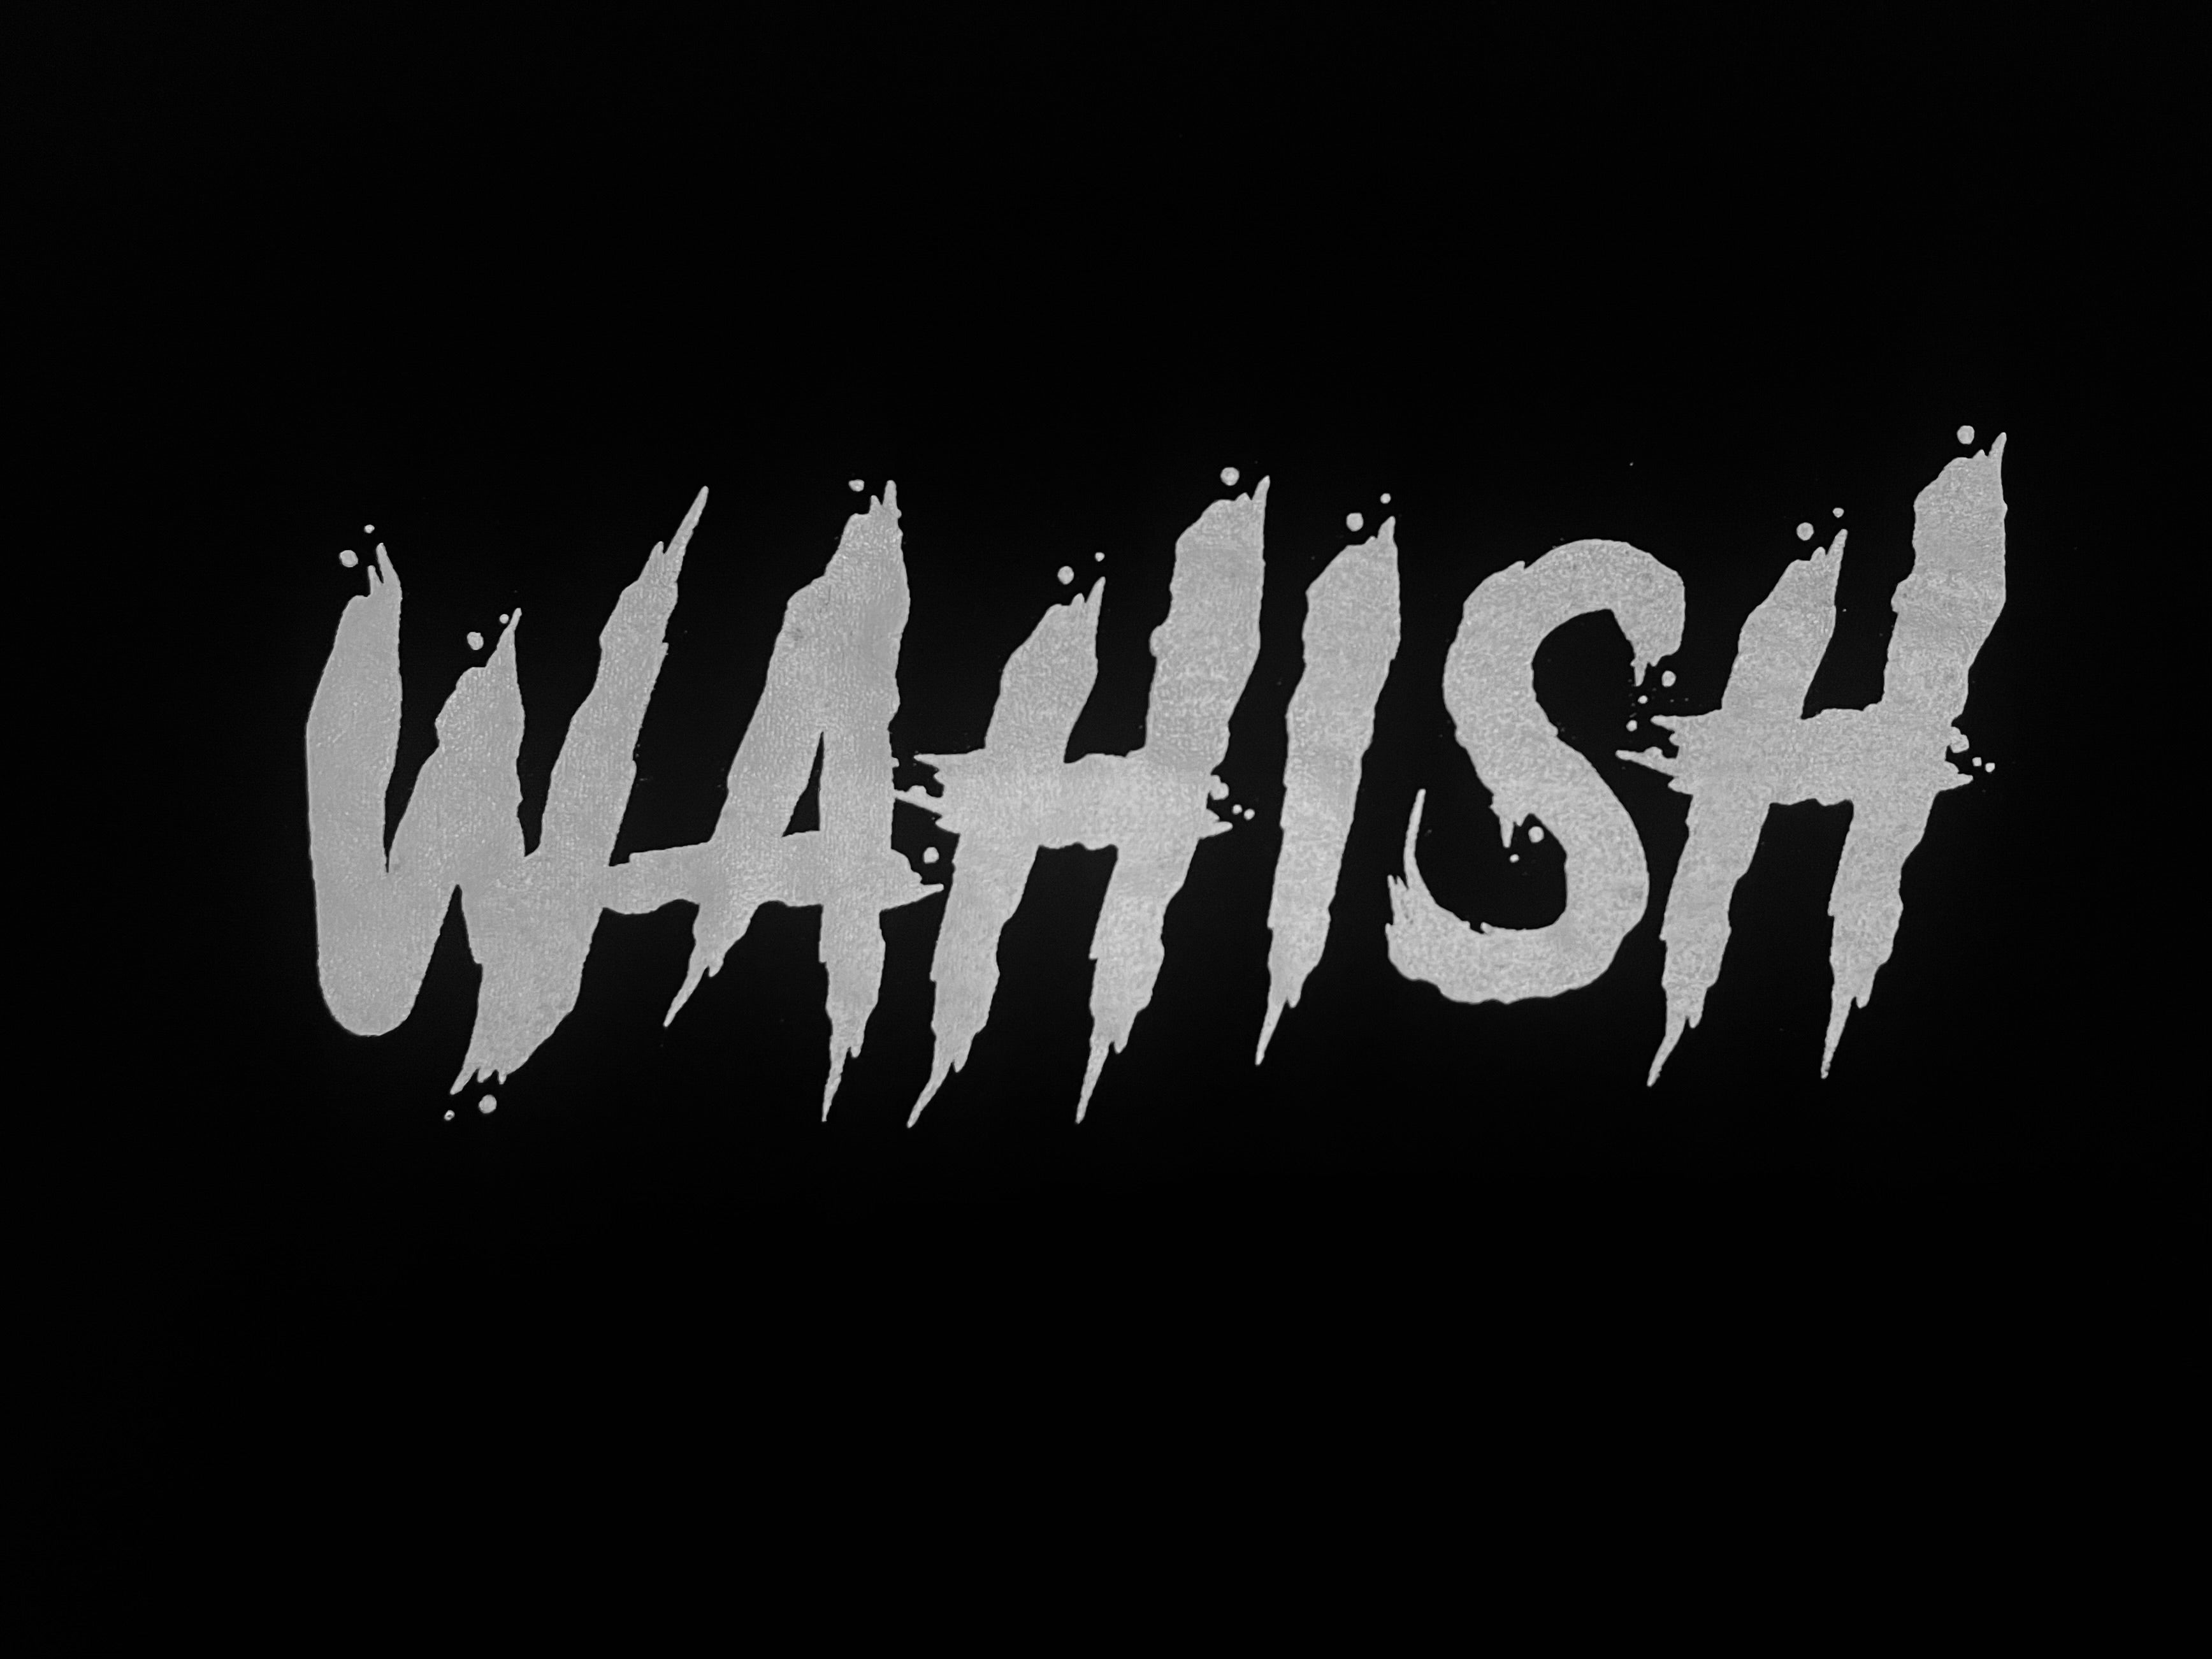 Wahish (Beast) T-shirt - Habibi Heritage